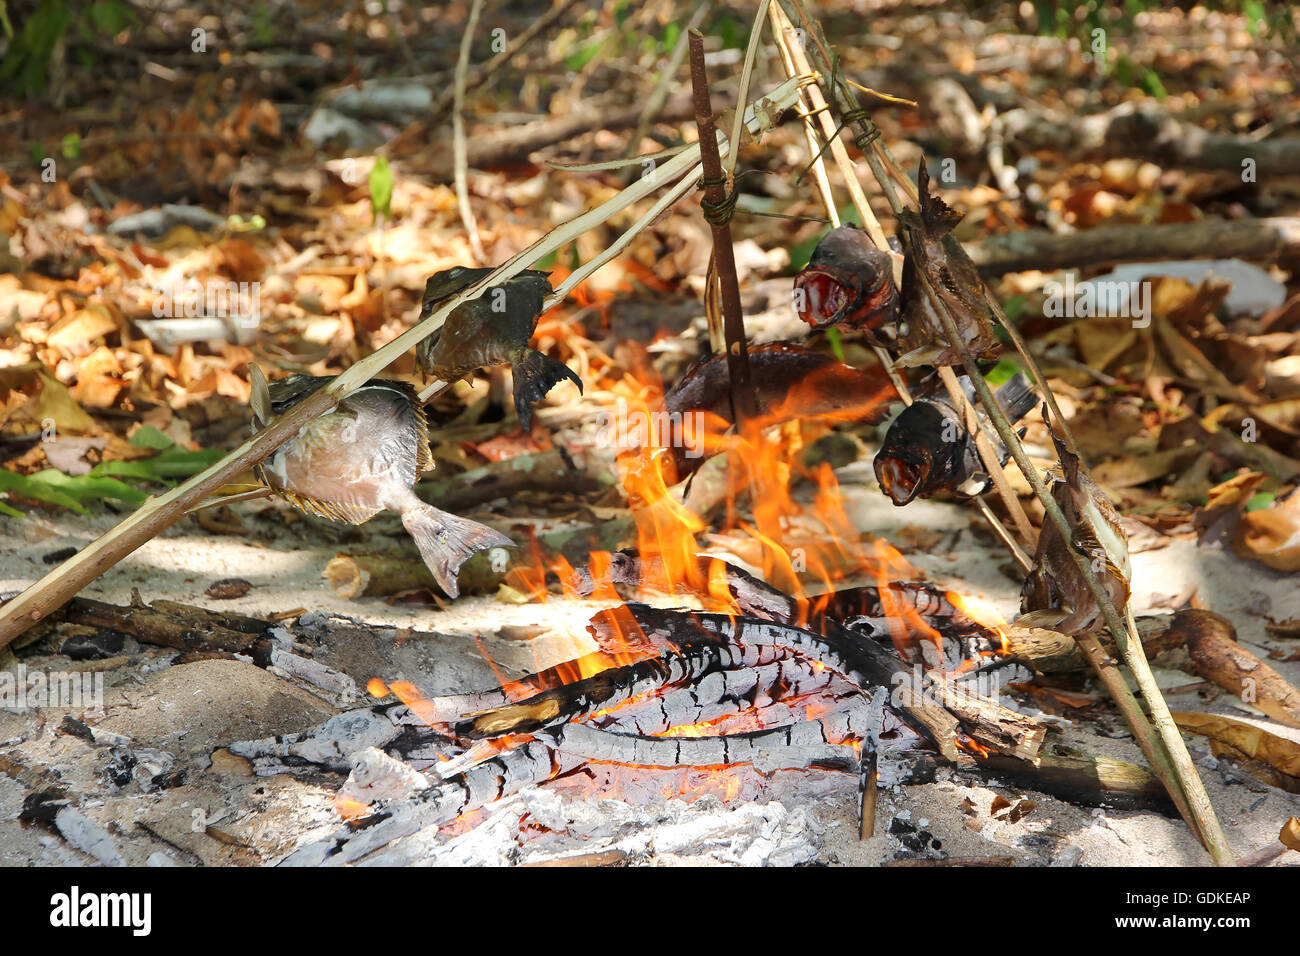 Natürliche Weise, Fisch zu grillen. Nutzung des Waldes. Kochen Aktivitäten. Stockfoto